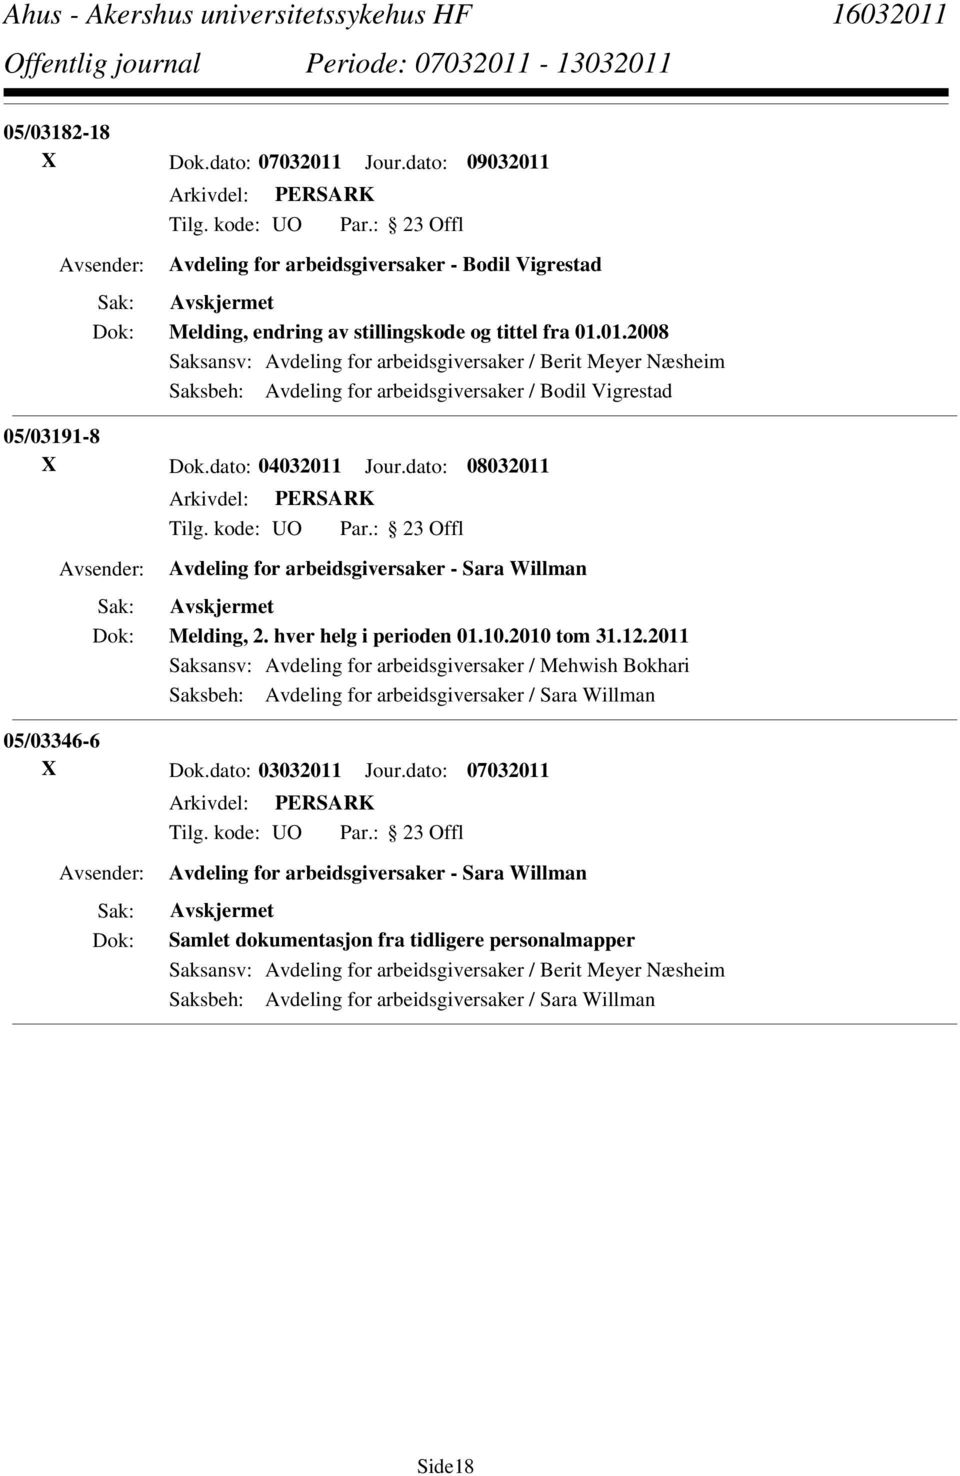 2011 Saksansv: Avdeling for arbeidsgiversaker / Mehwish Bokhari Saksbeh: Avdeling for arbeidsgiversaker / Sara Willman 05/03346-6 X Dok.dato: 03032011 Jour.